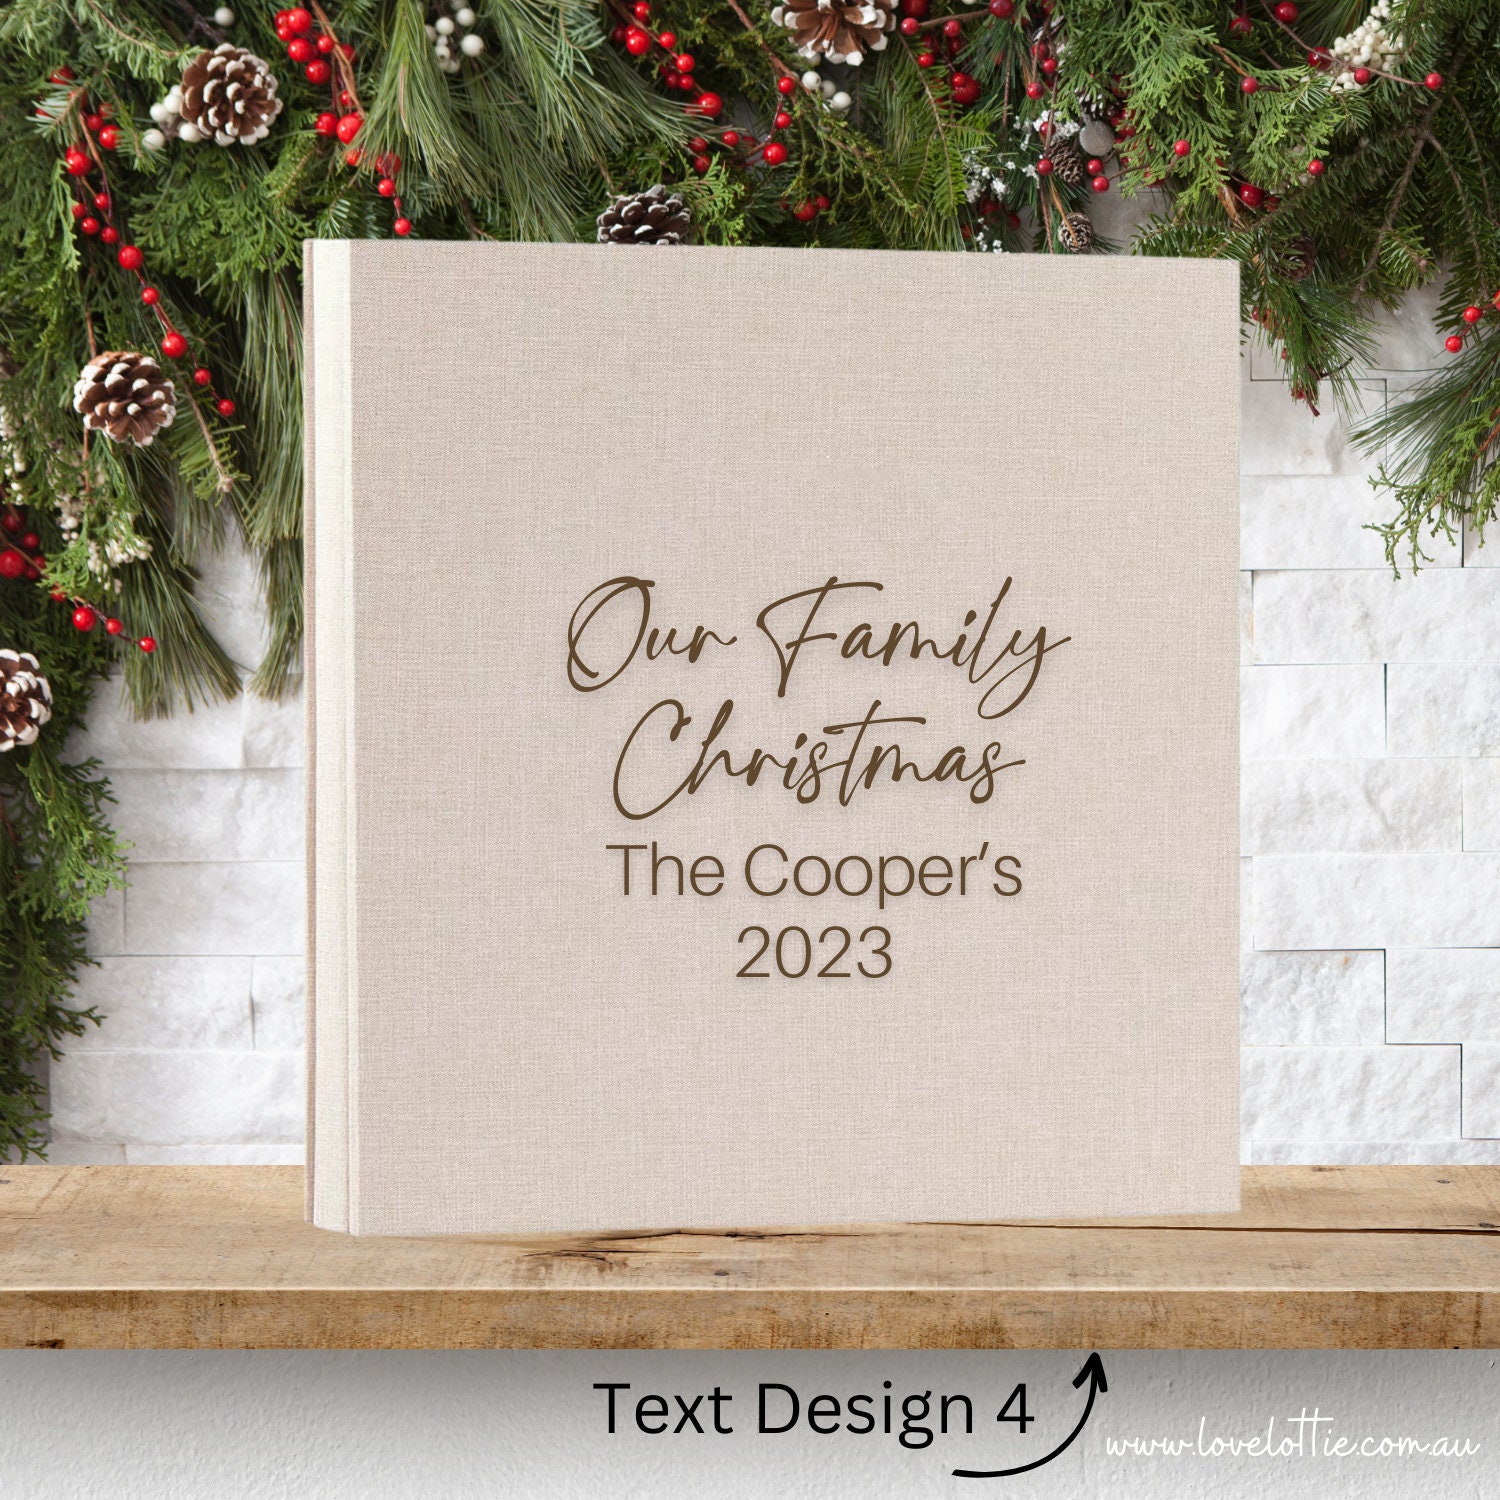 Family Christmas Album Book (12×12) –